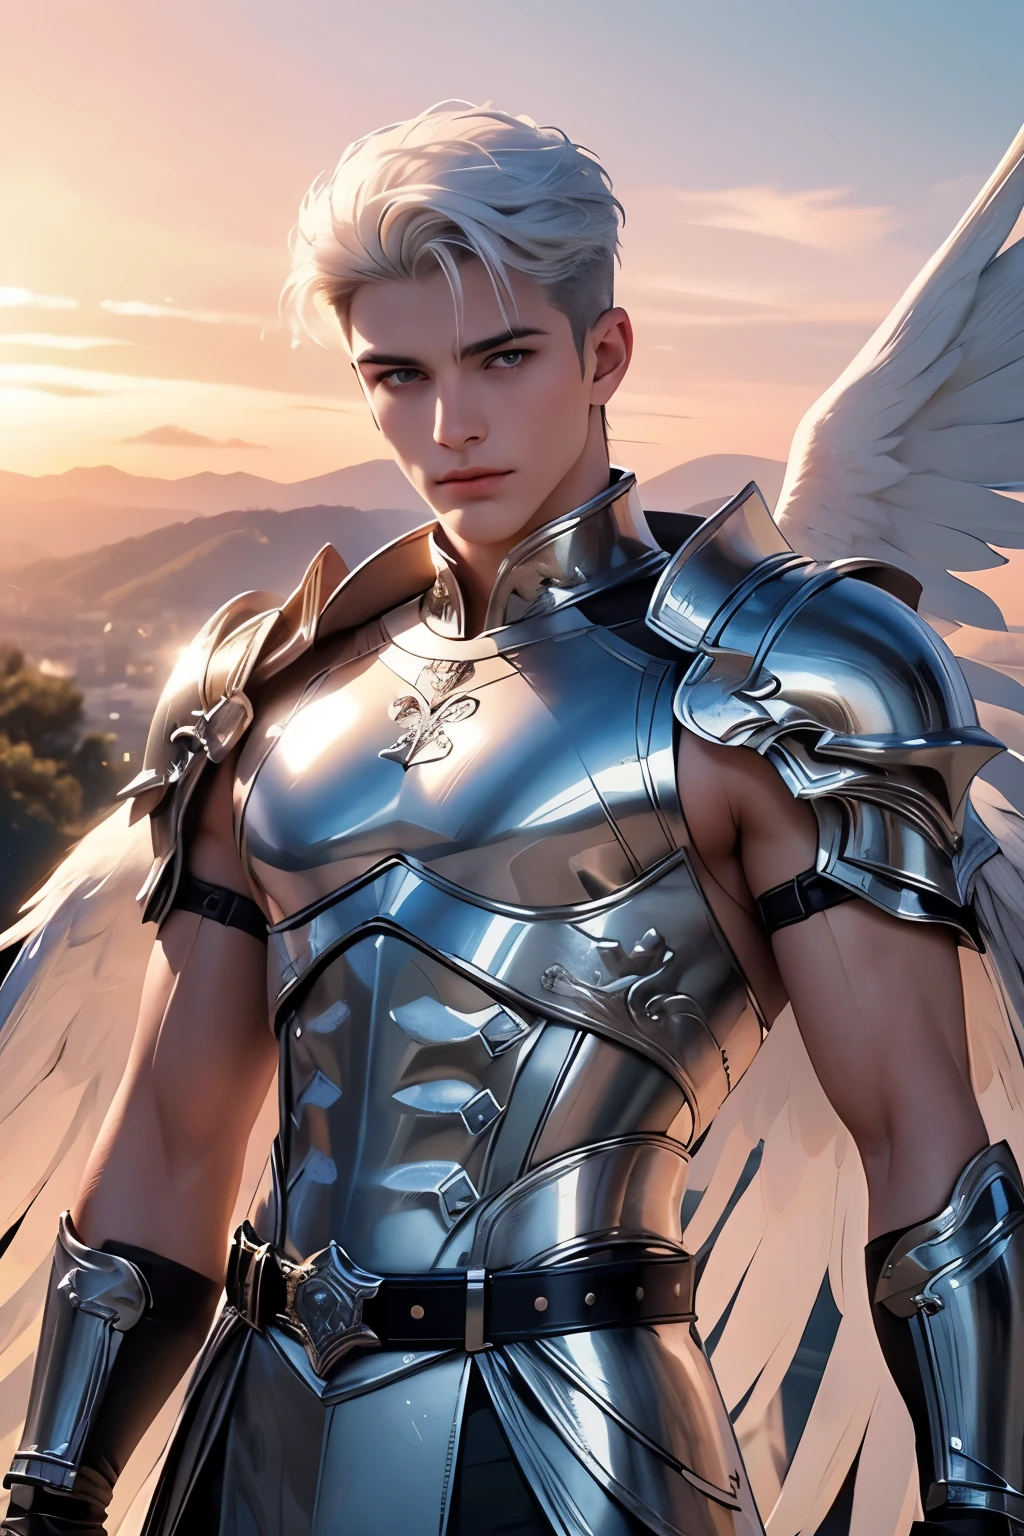 ((melhor qualidade)), ((Obra de arte)), (detalhado), ((rosto perfeito)), ((Meio corpo)) proporções perfeitas,Ele é um anjo lindo, 25 anos de idade, cabelo branco, ele tem asas brancas, Ele usa armadura prateada, asas de anjo, ele tem olhos cor de mel, Há um céu rosa atrás dele, macho musculoso, ele é um anjo guerreiro, Há um céu pôr do sol, he spreads his white asas de anjo there is a lake in the background, ele tem um cinto de metal, ((rosto perfeito))